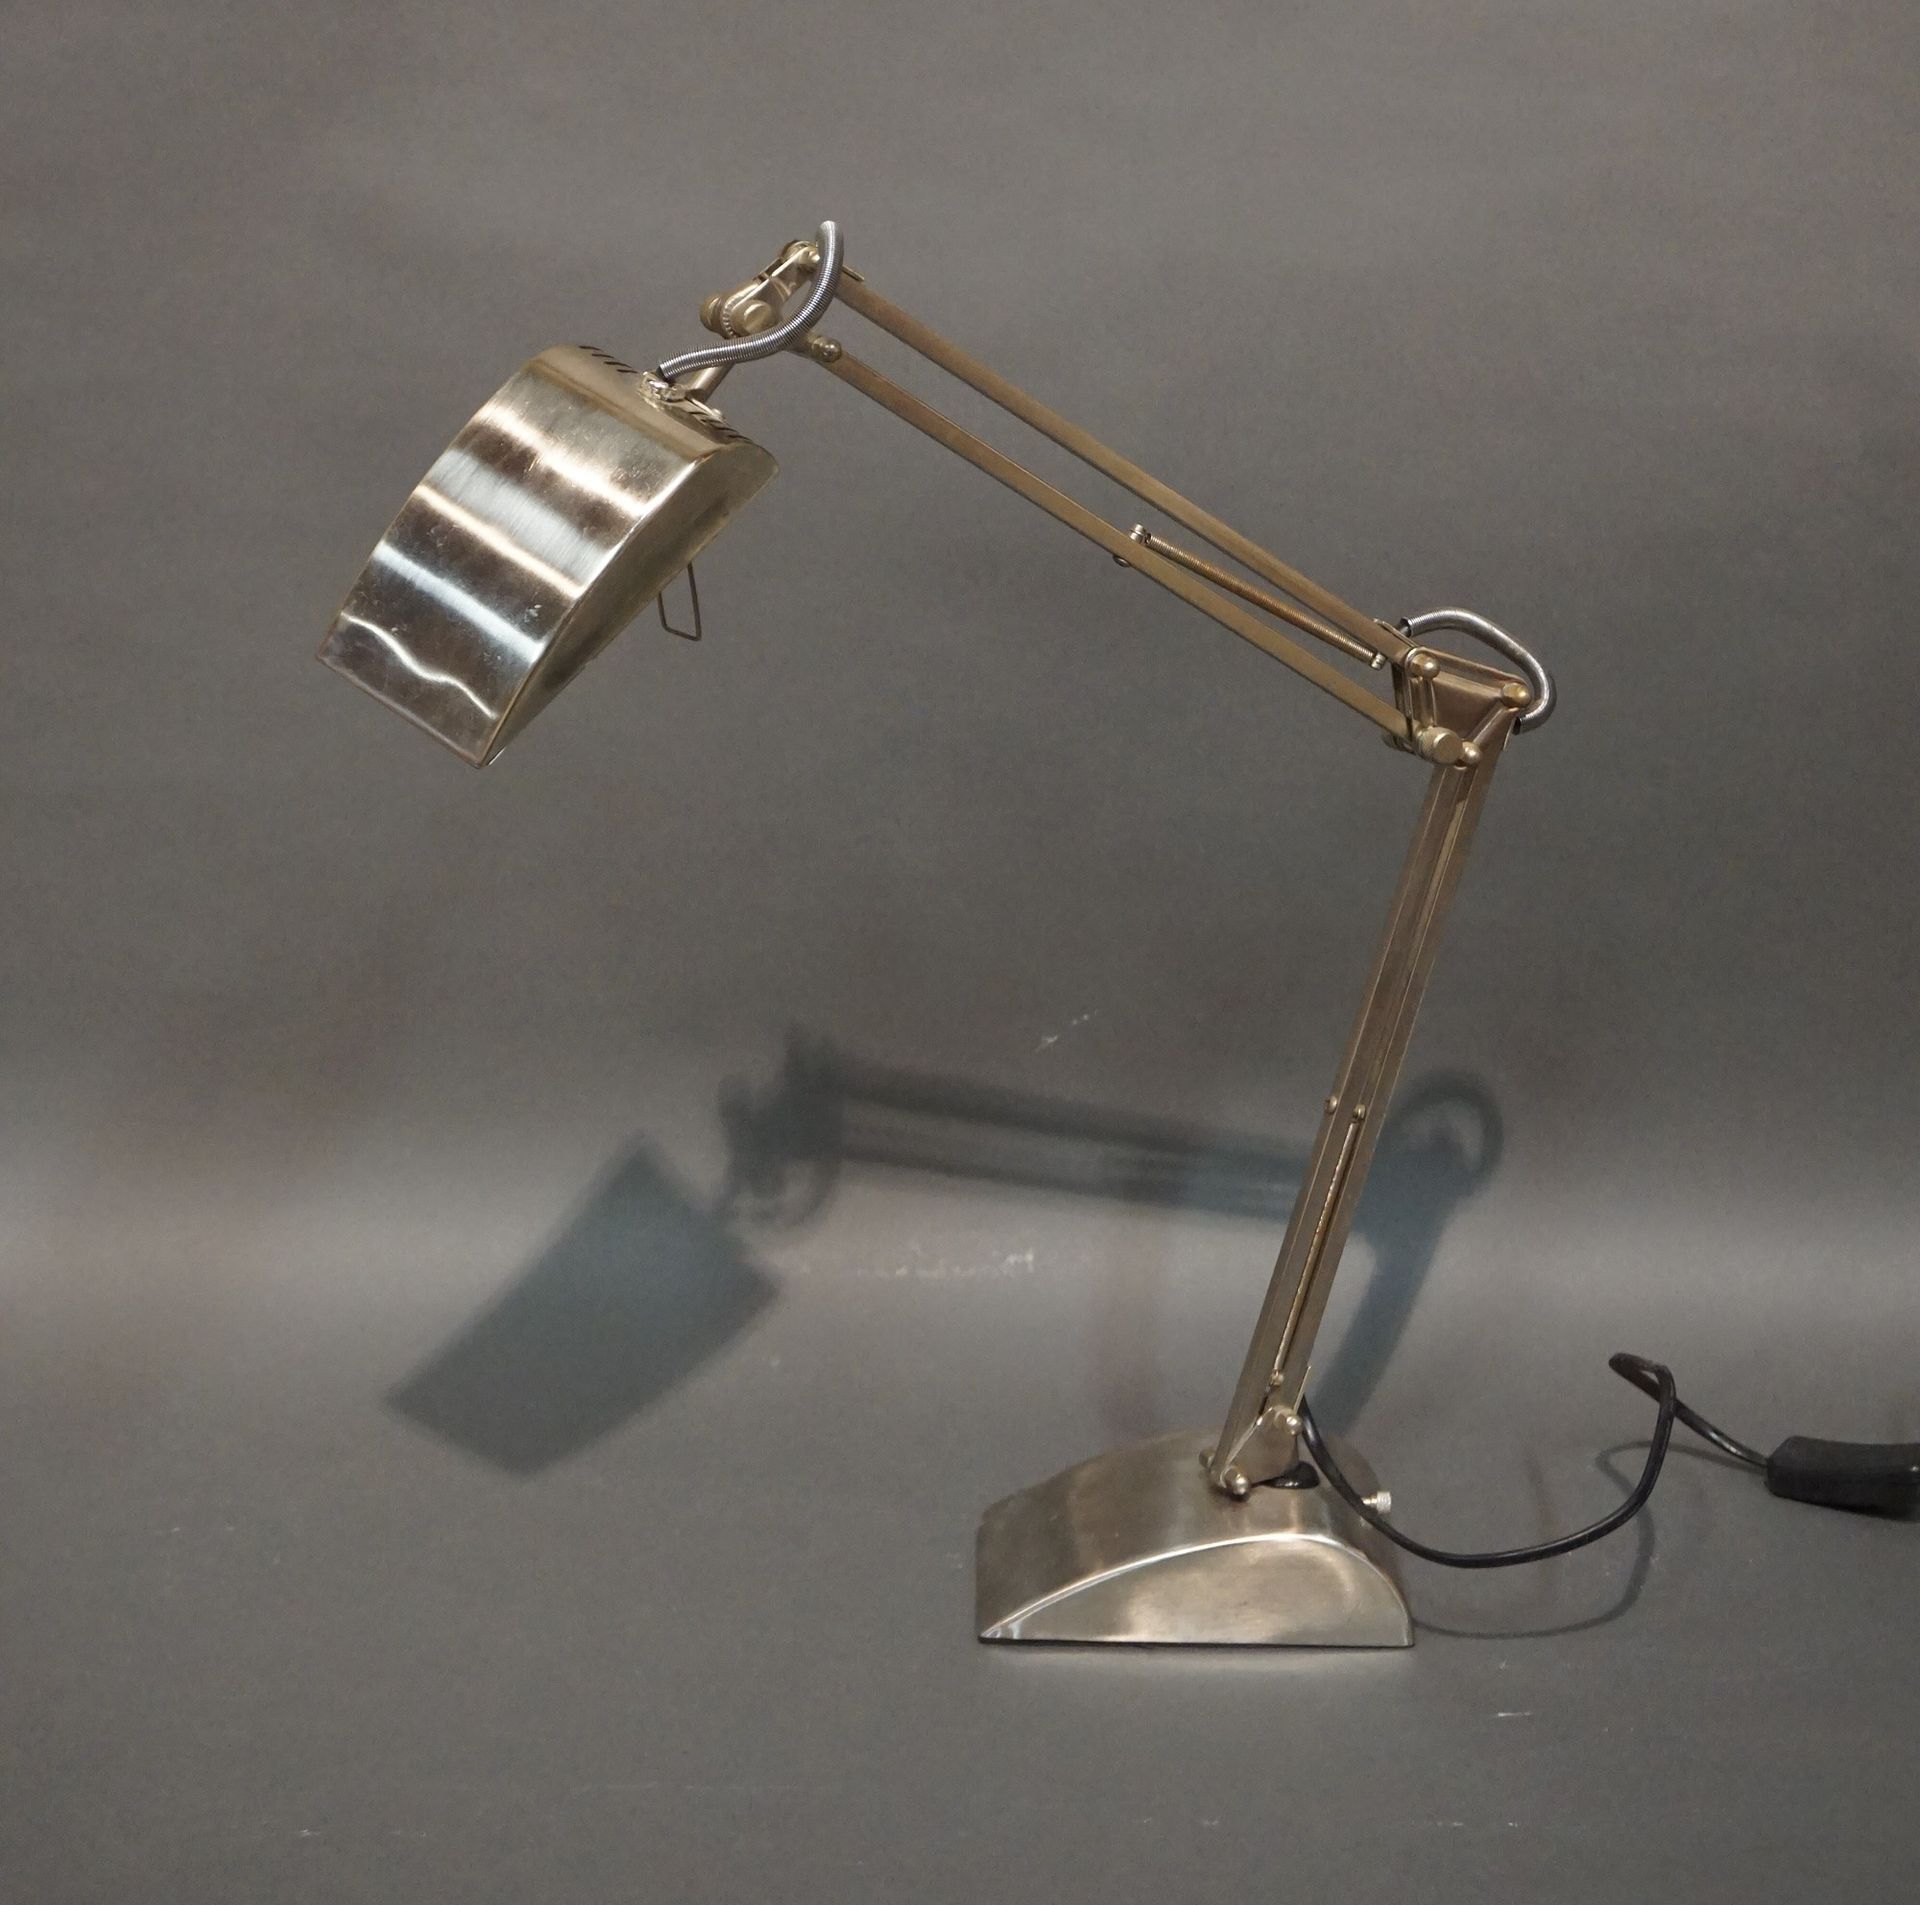 Null Schreibtischlampe aus Metall mit Gelenken (zum Zusammenziehen). Ca. 50 cm